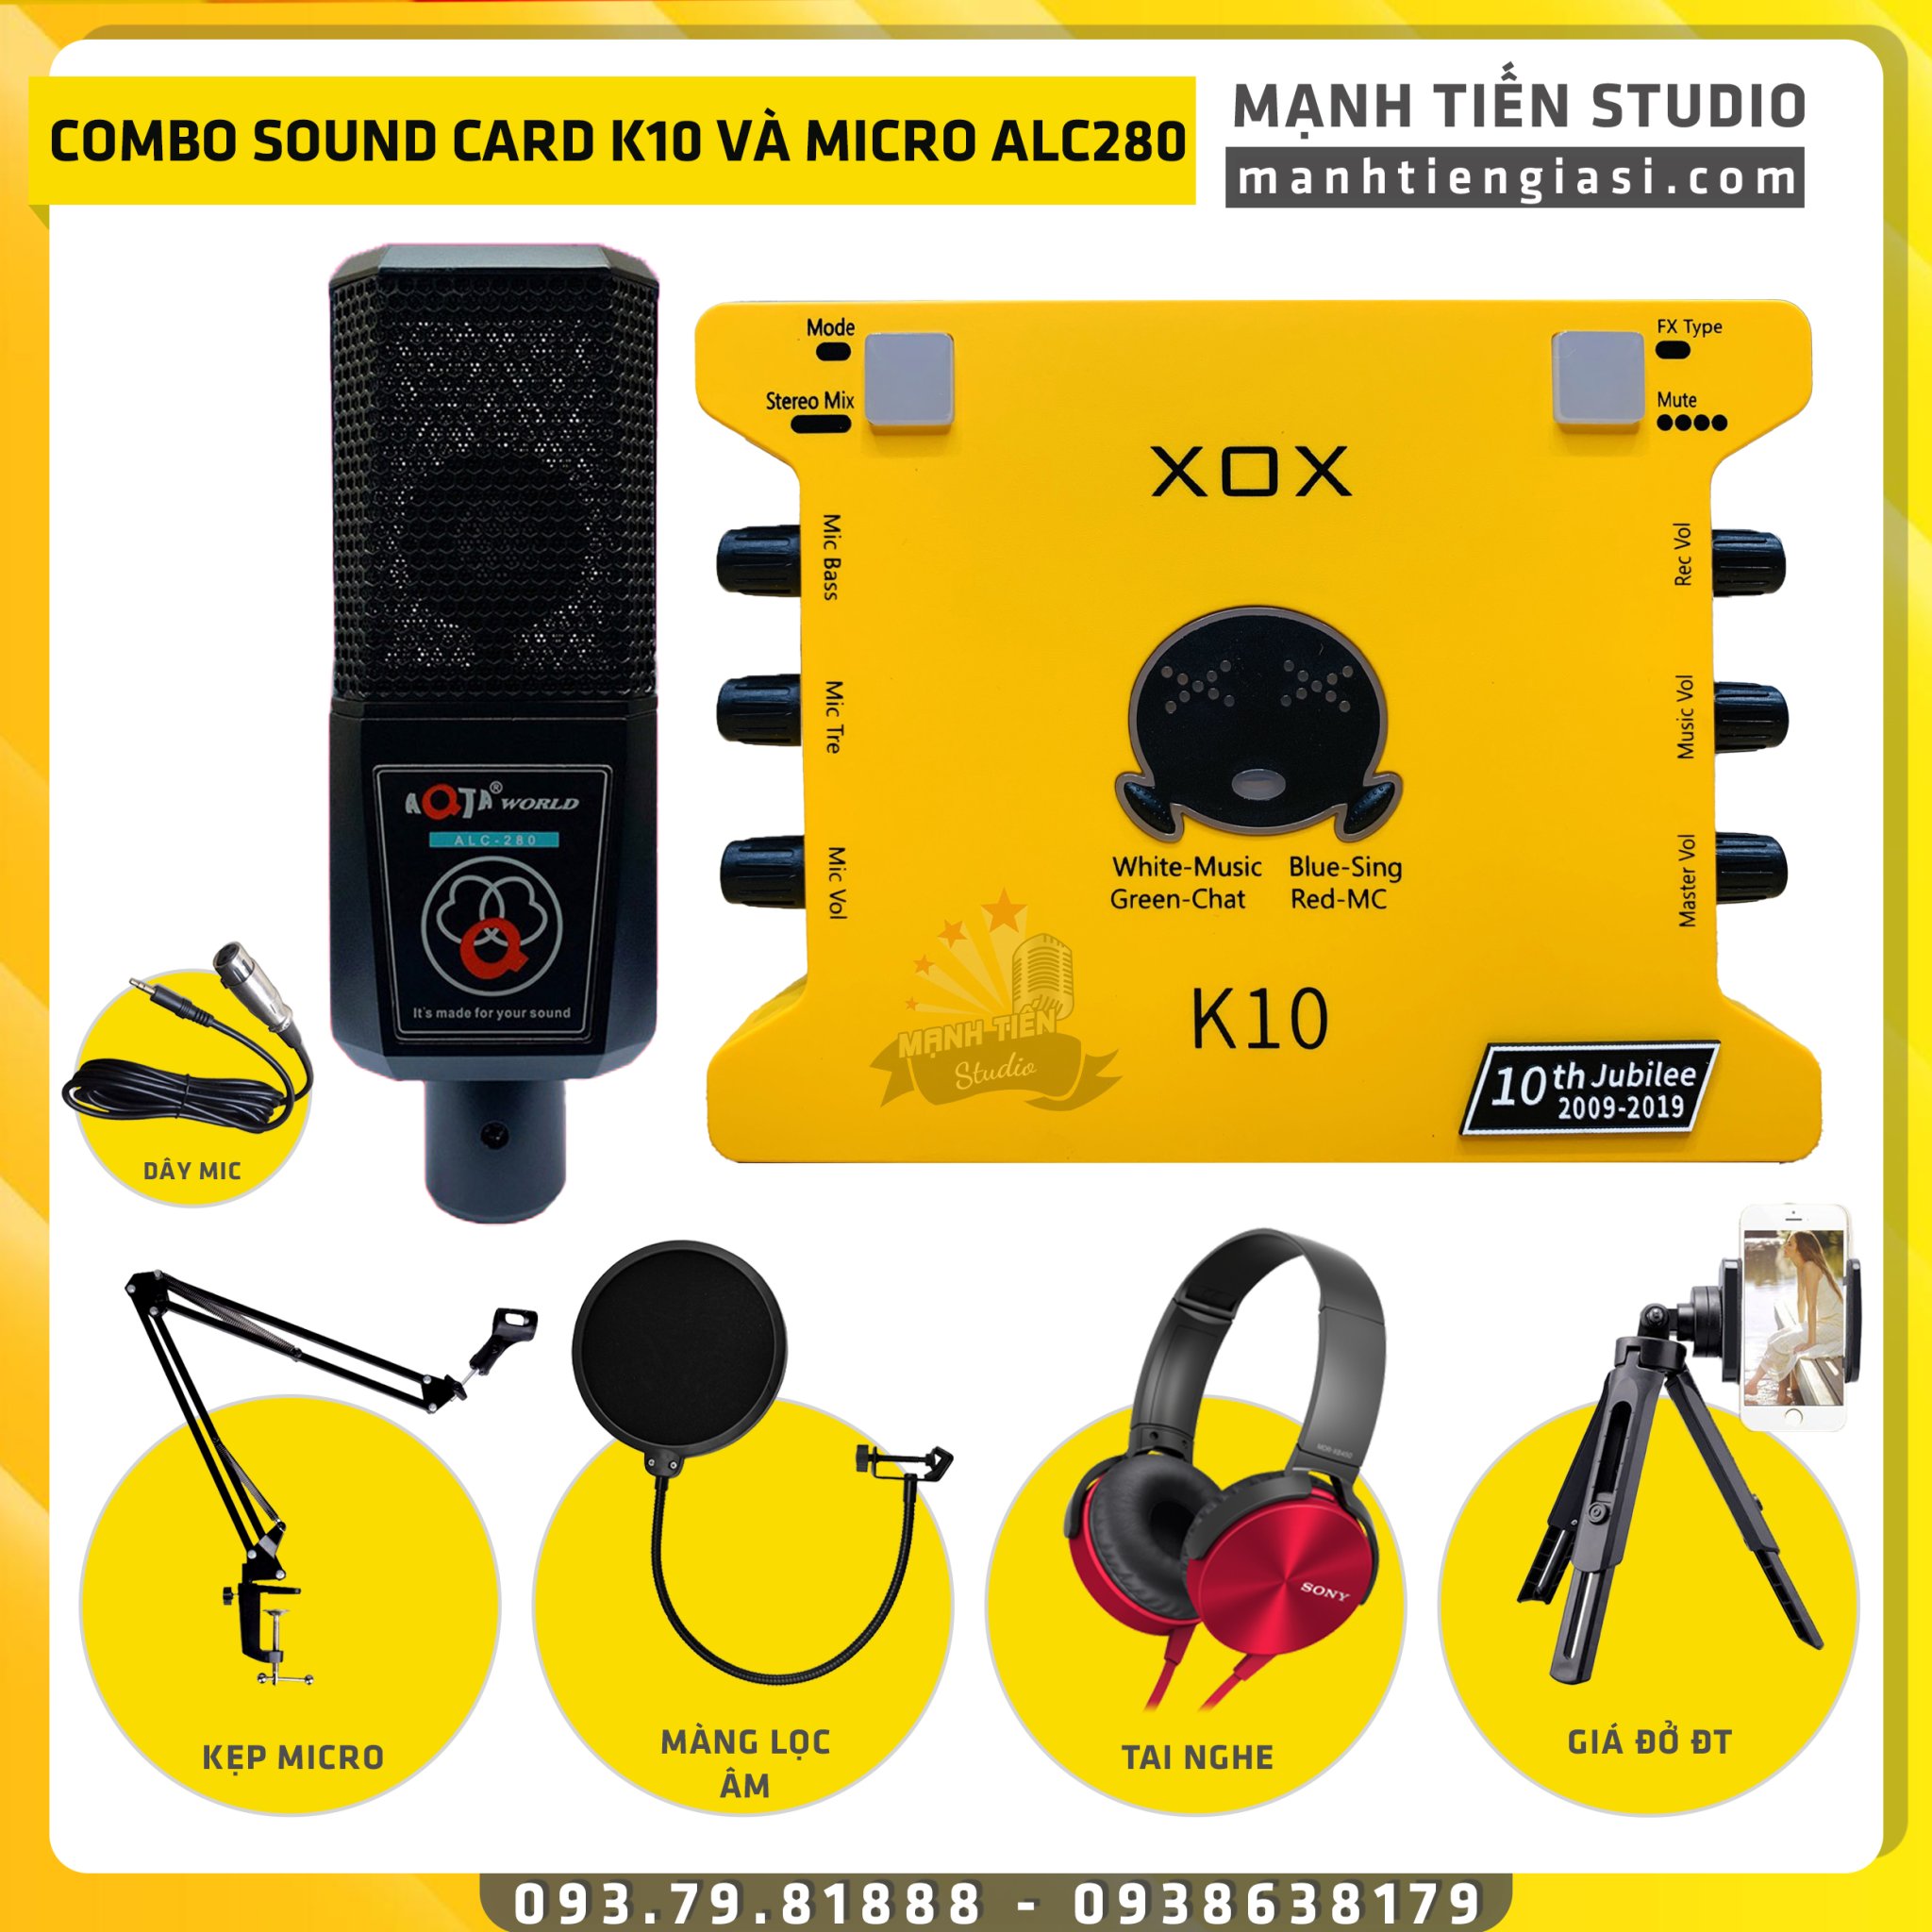 [Combo livestream 2021] Bộ Combo livestream Micro AQTA ALC 280 + Sound card XOX K10 jubilee - Kèm full phụ kiện kẹp micro, màng lọc, tai nghe chụp tai, giá đỡ đt - Thu âm, livestream, karaoke online chuyên nghiệp trên cả điện thoại máy tính - Chính hãng